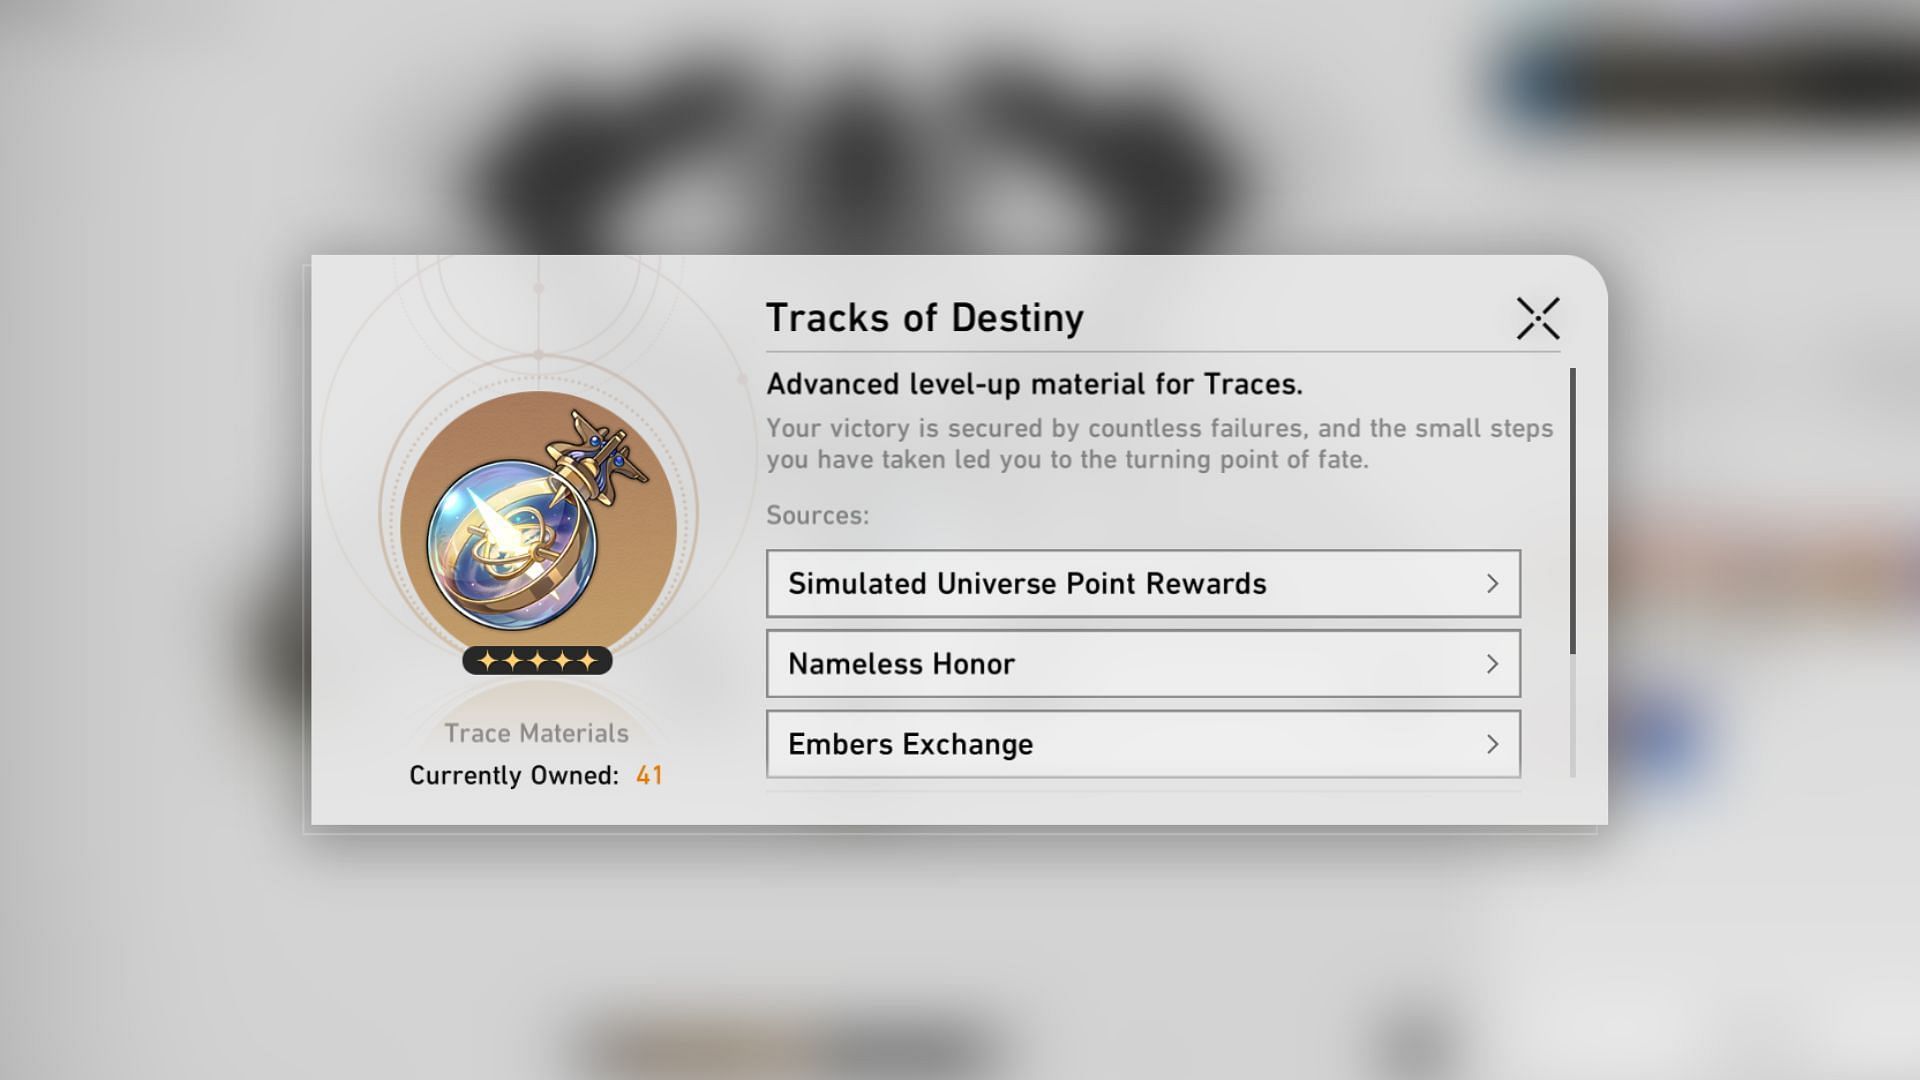 Tracks of Destiny (Image via HoYoverse)